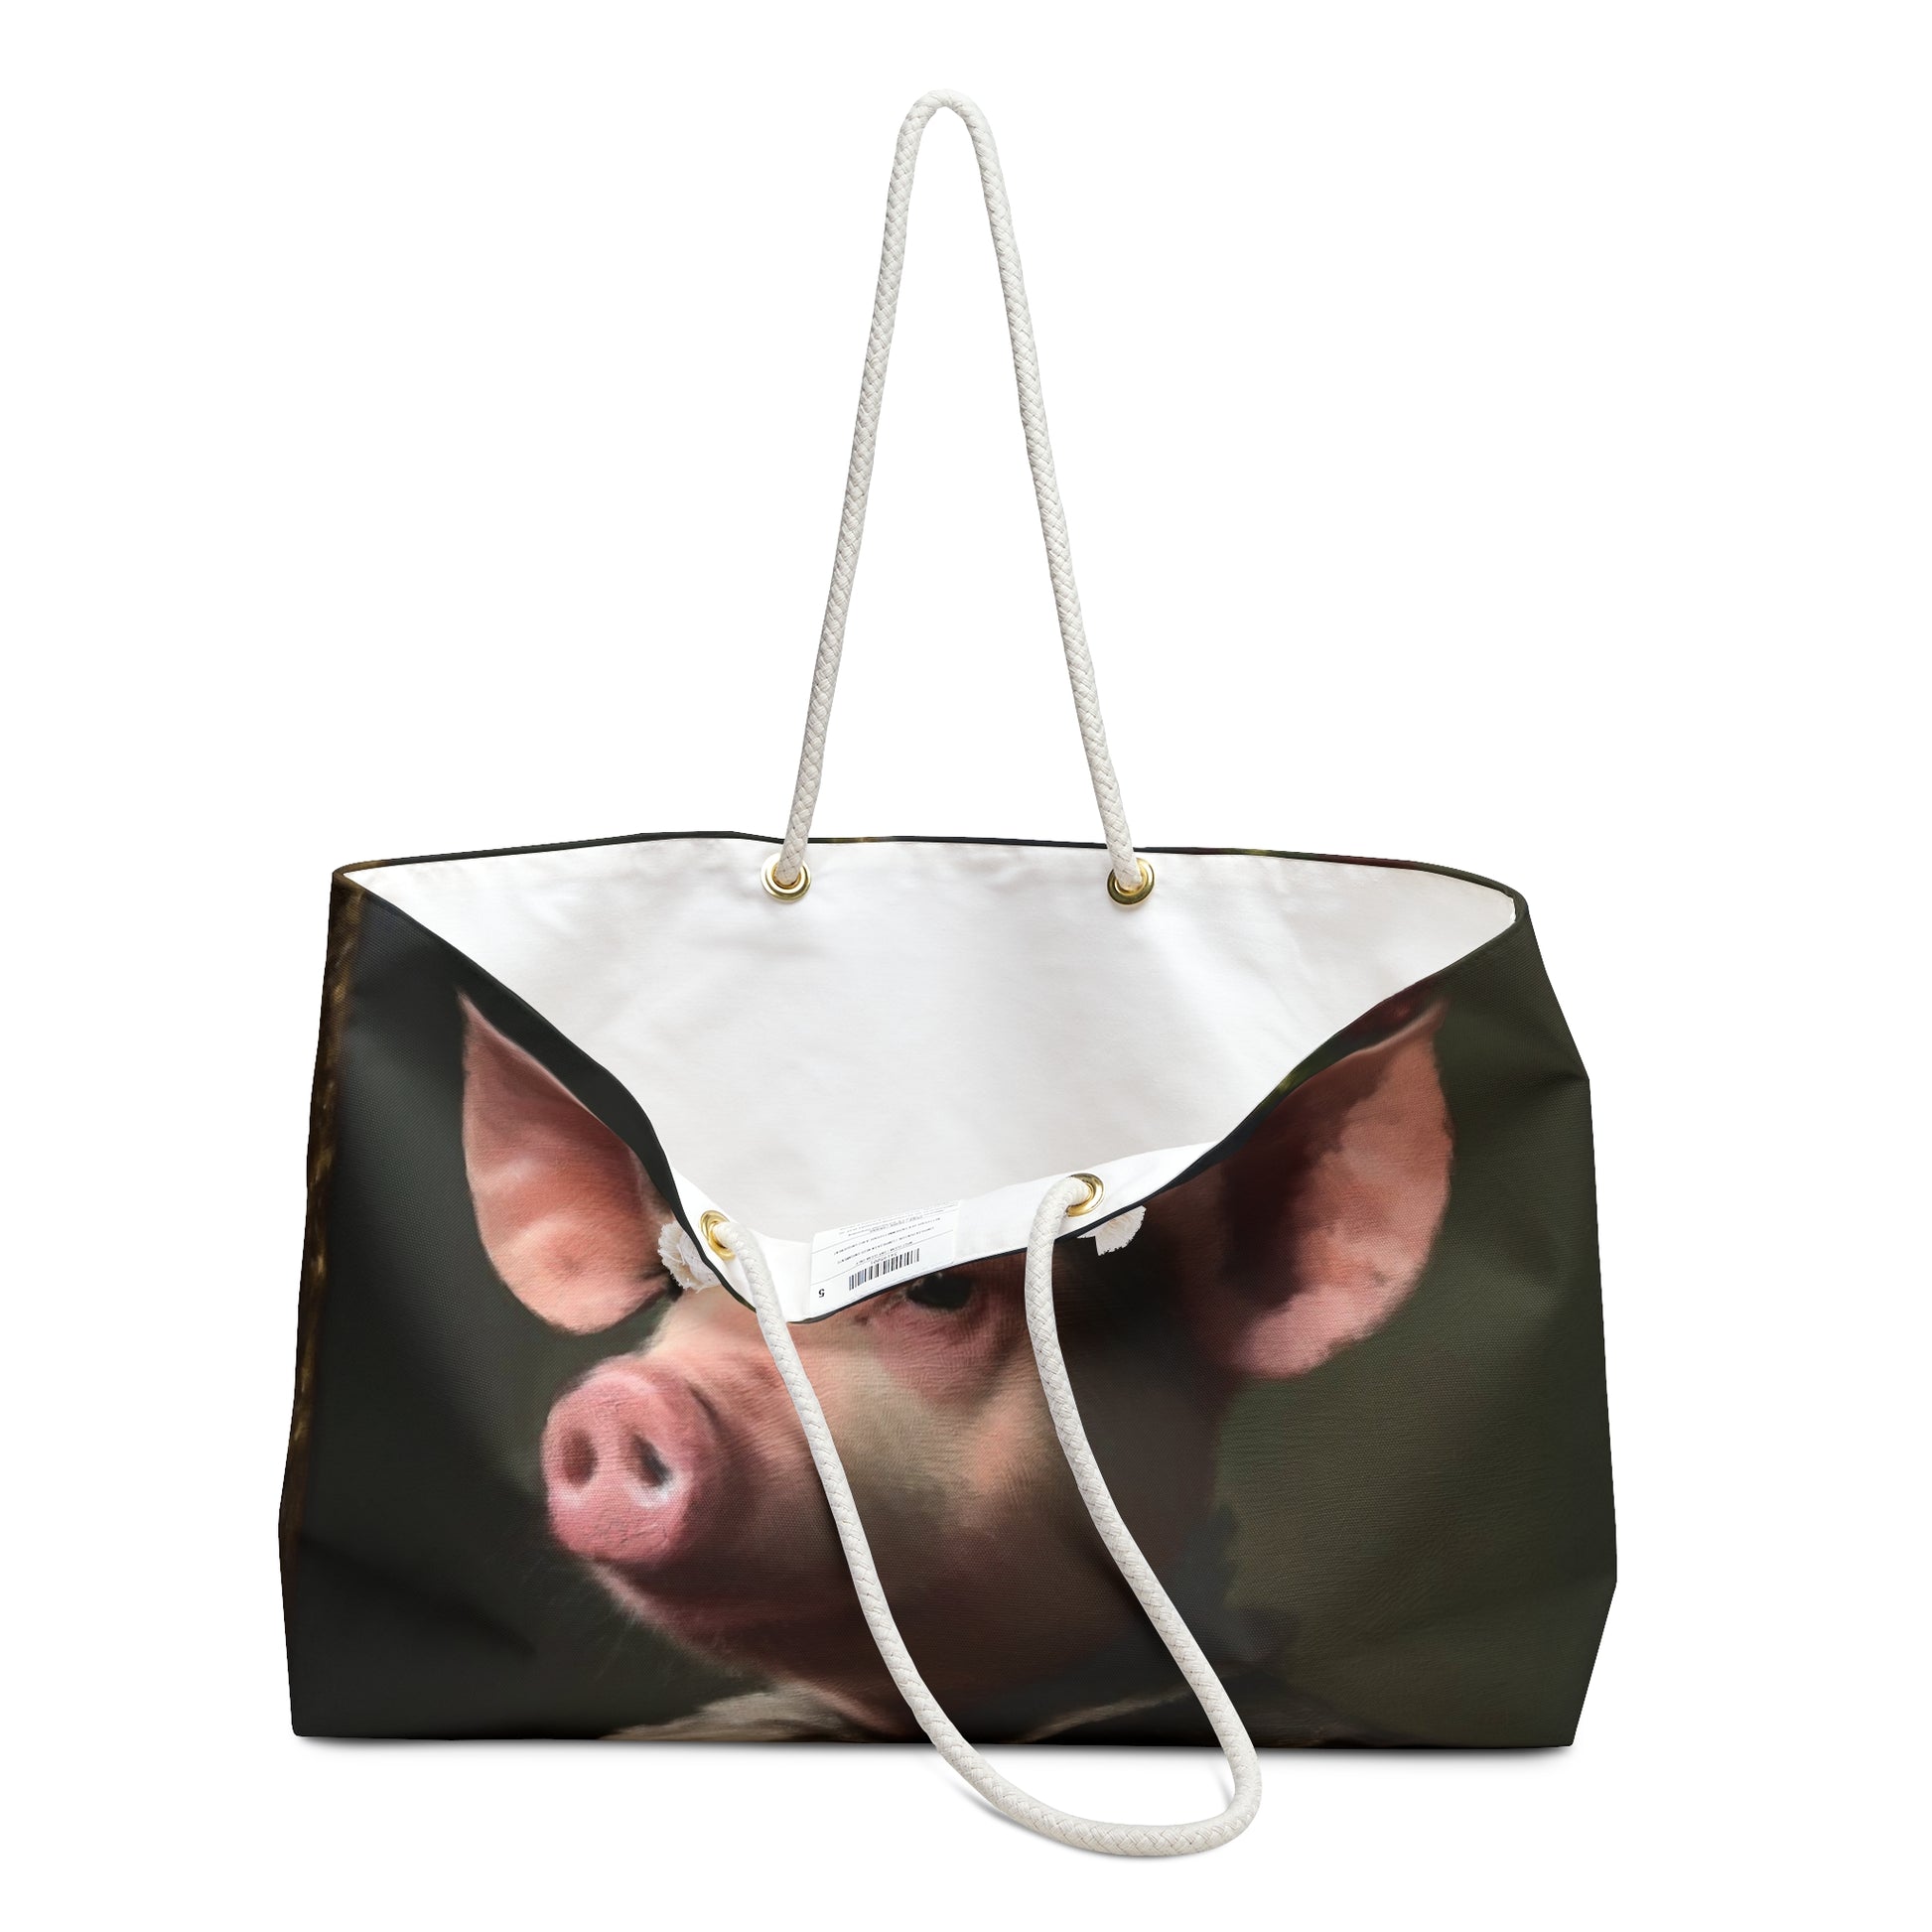 Weekender Tote Bag - Pig handles